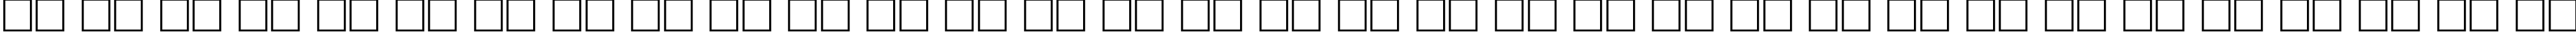 Пример написания русского алфавита шрифтом font142